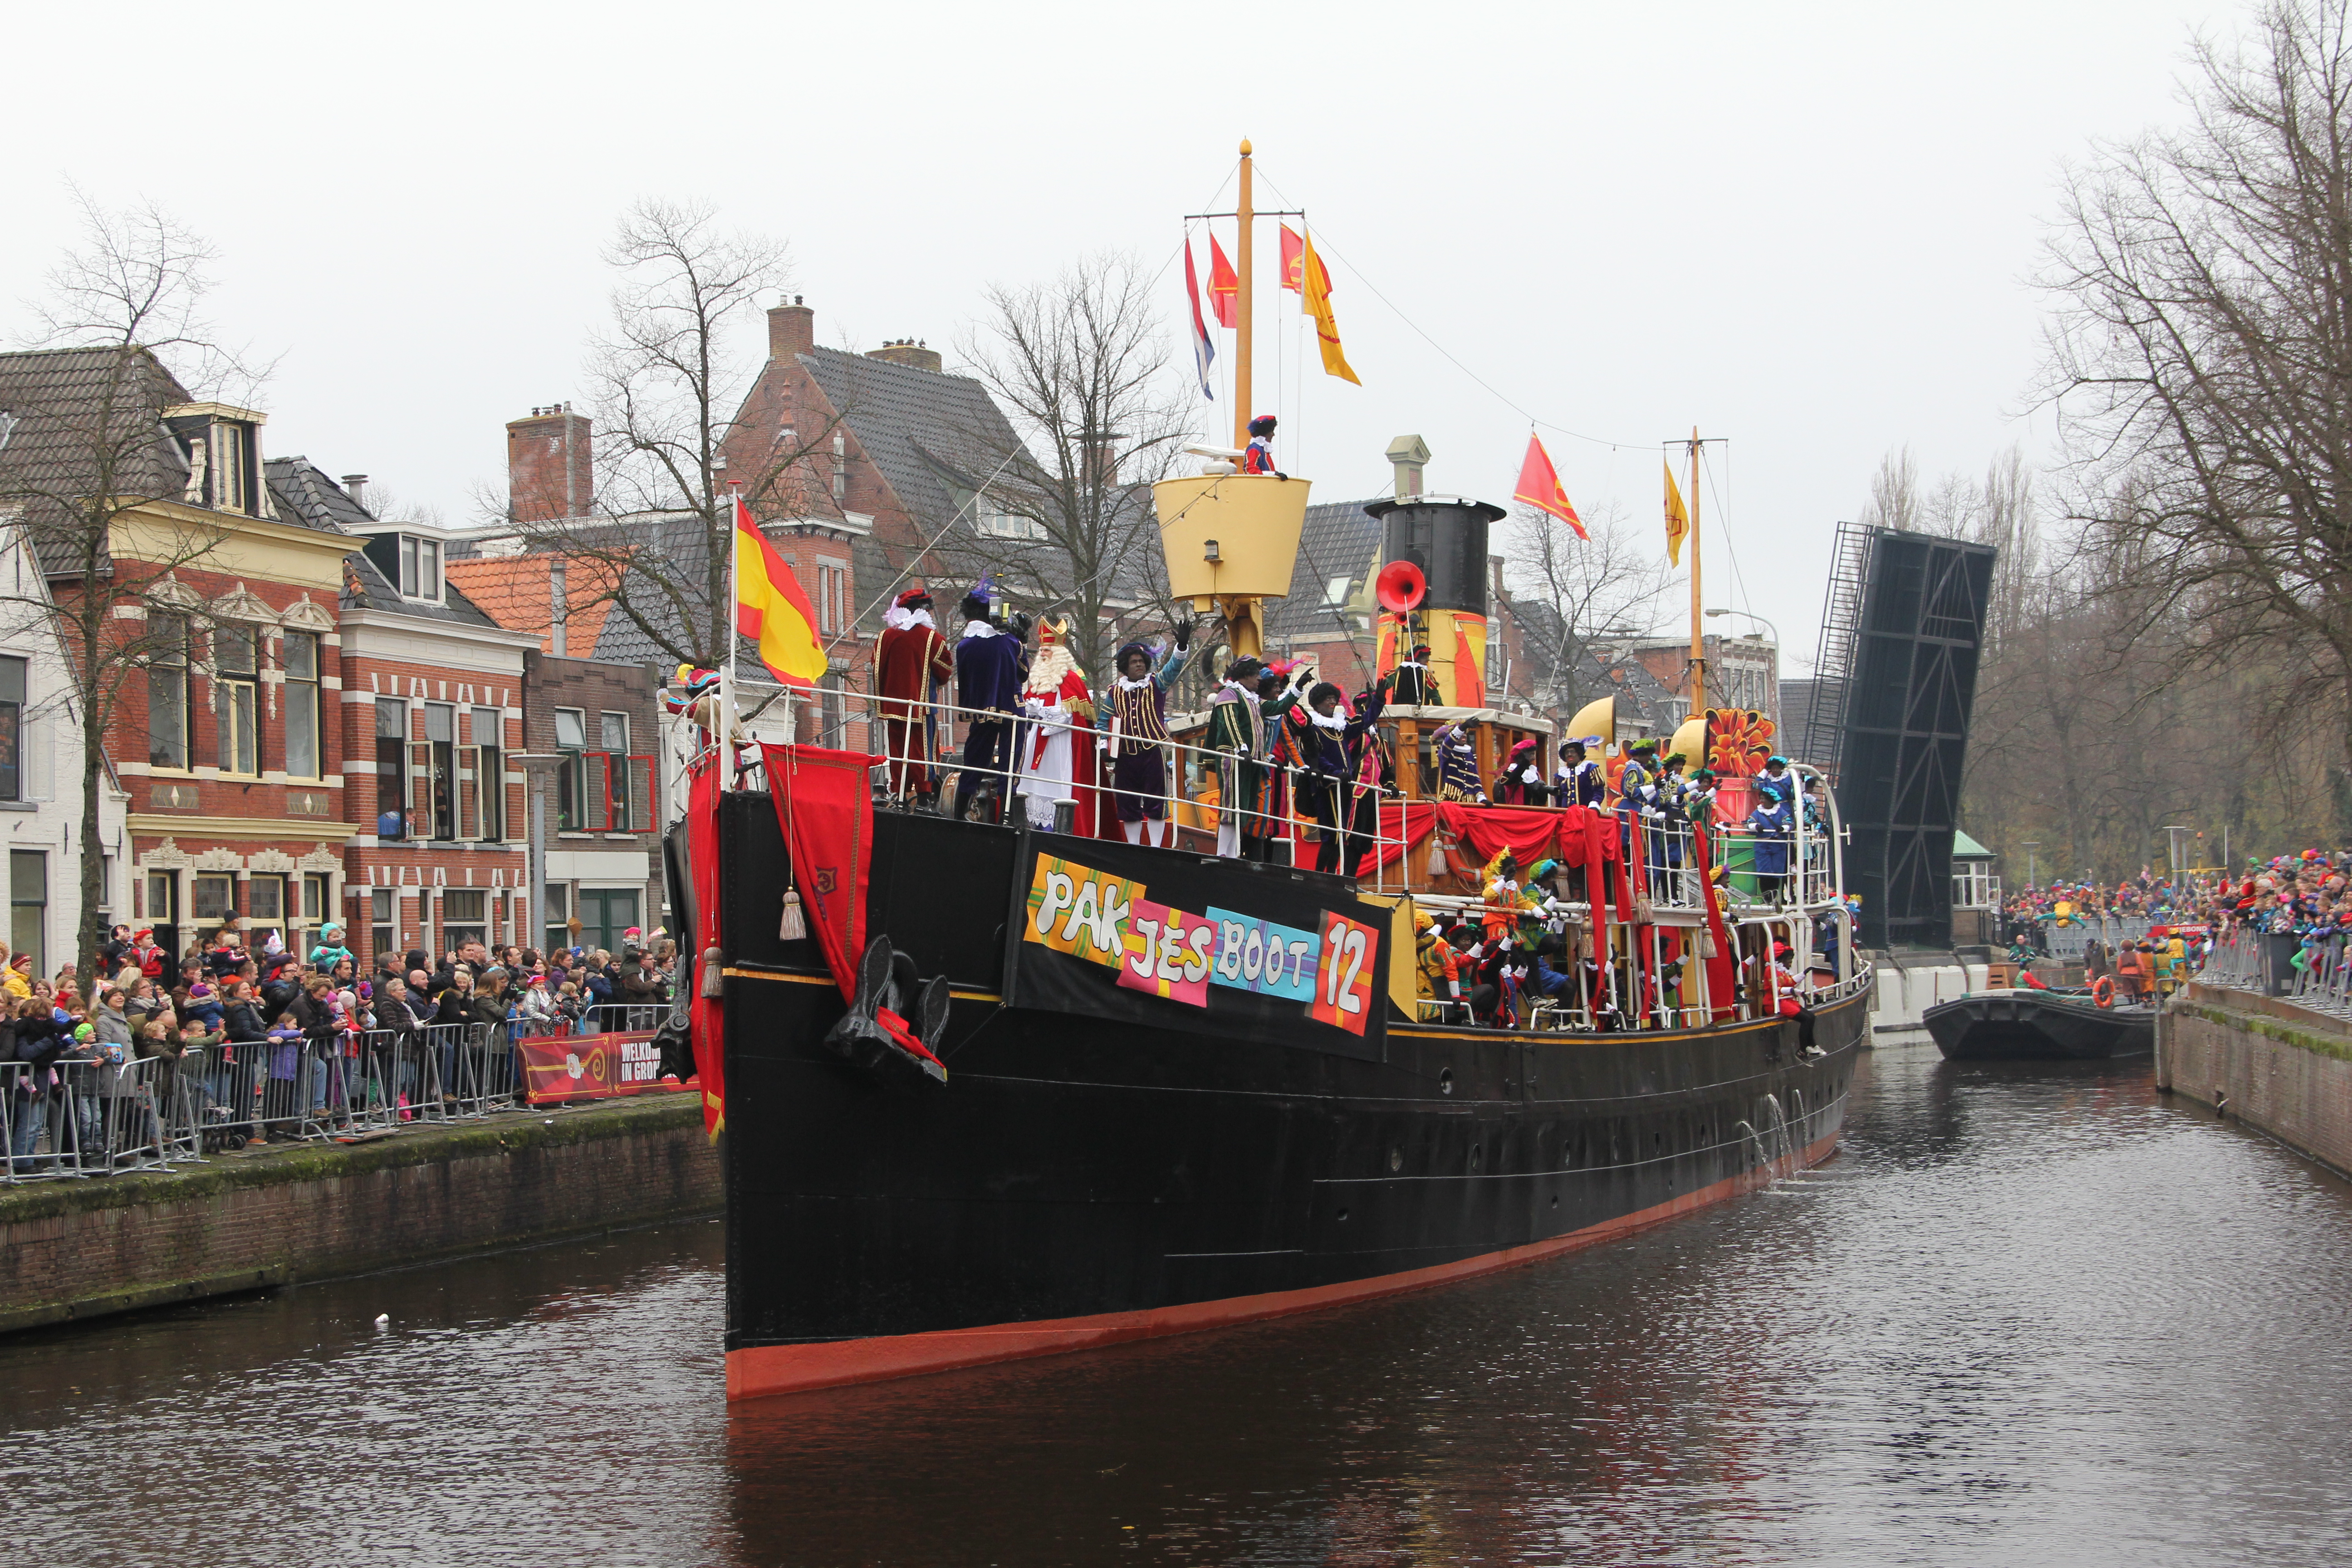 Verzakking beet interieur Landelijke intocht van Sinterklaas - Wikipedia